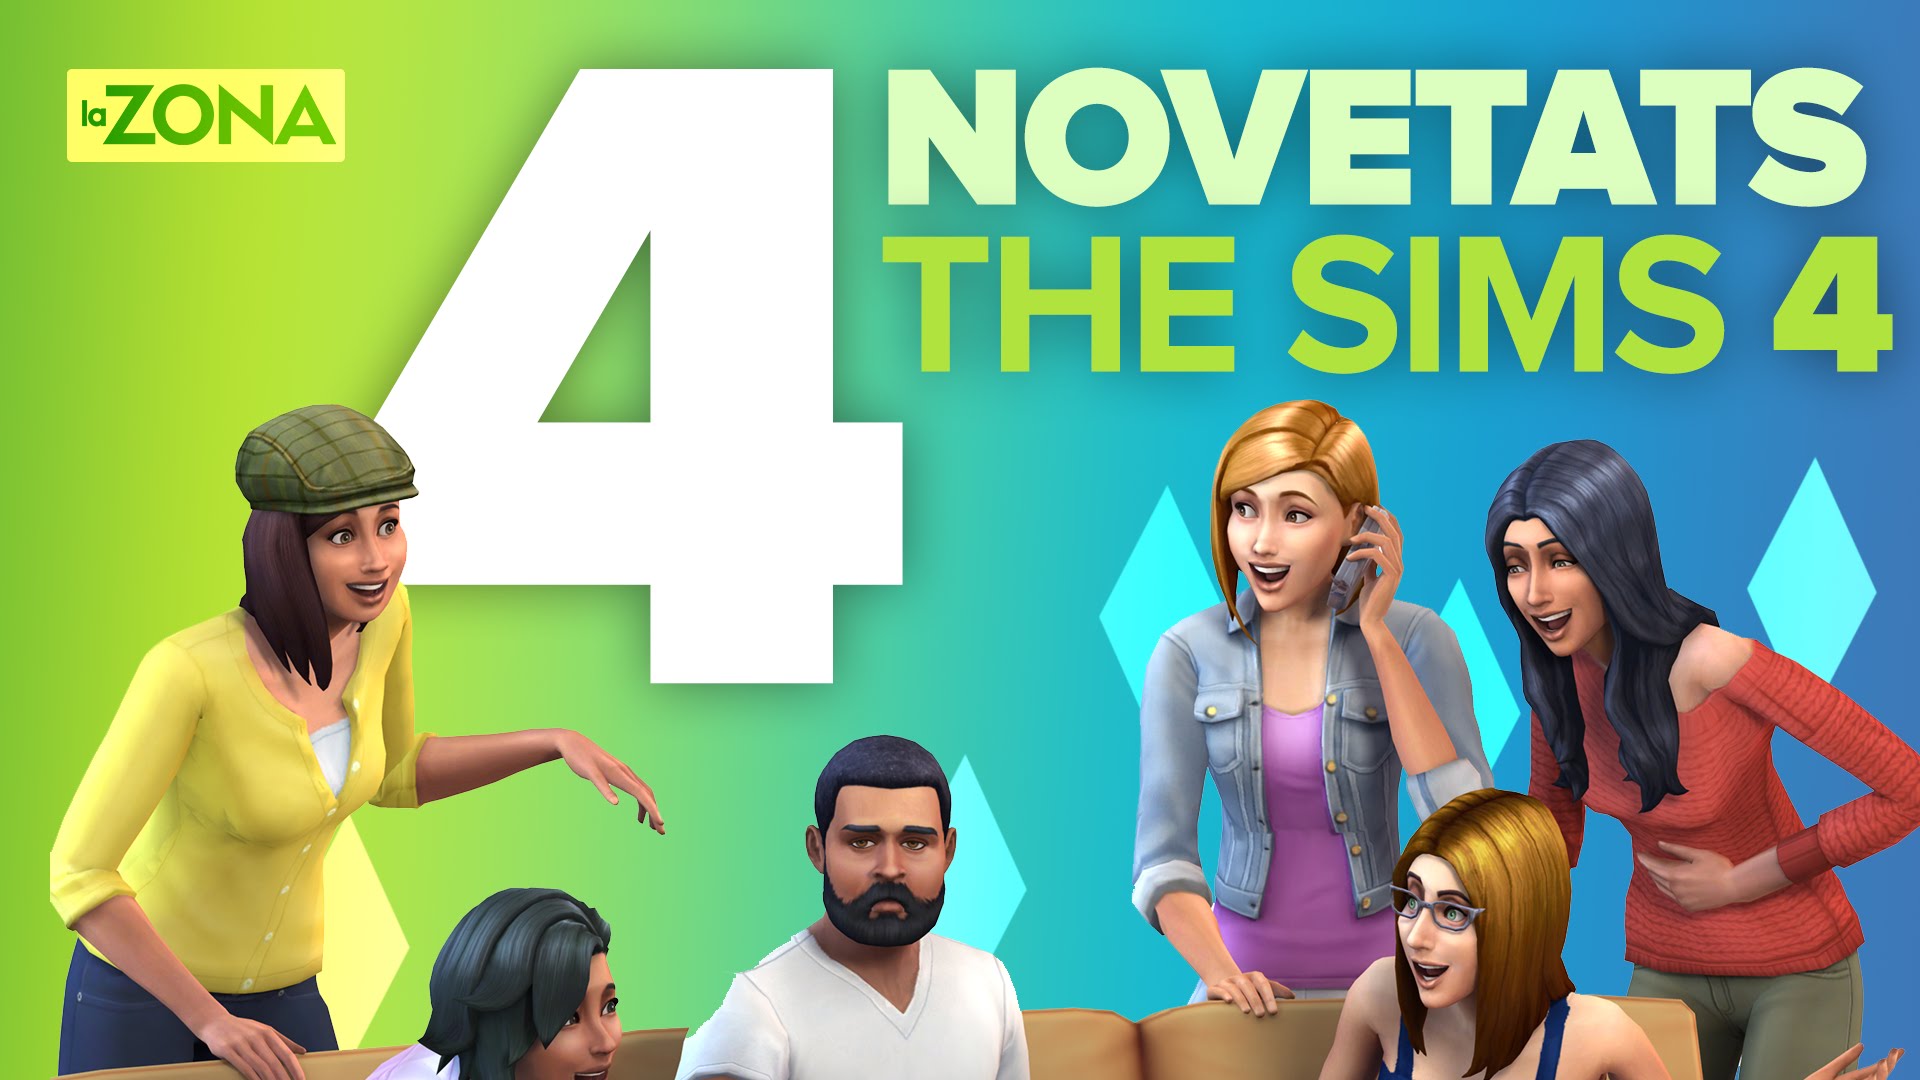 La Zona — 4 novetats estrella de The Sims 4 de La Nit Més Fosca